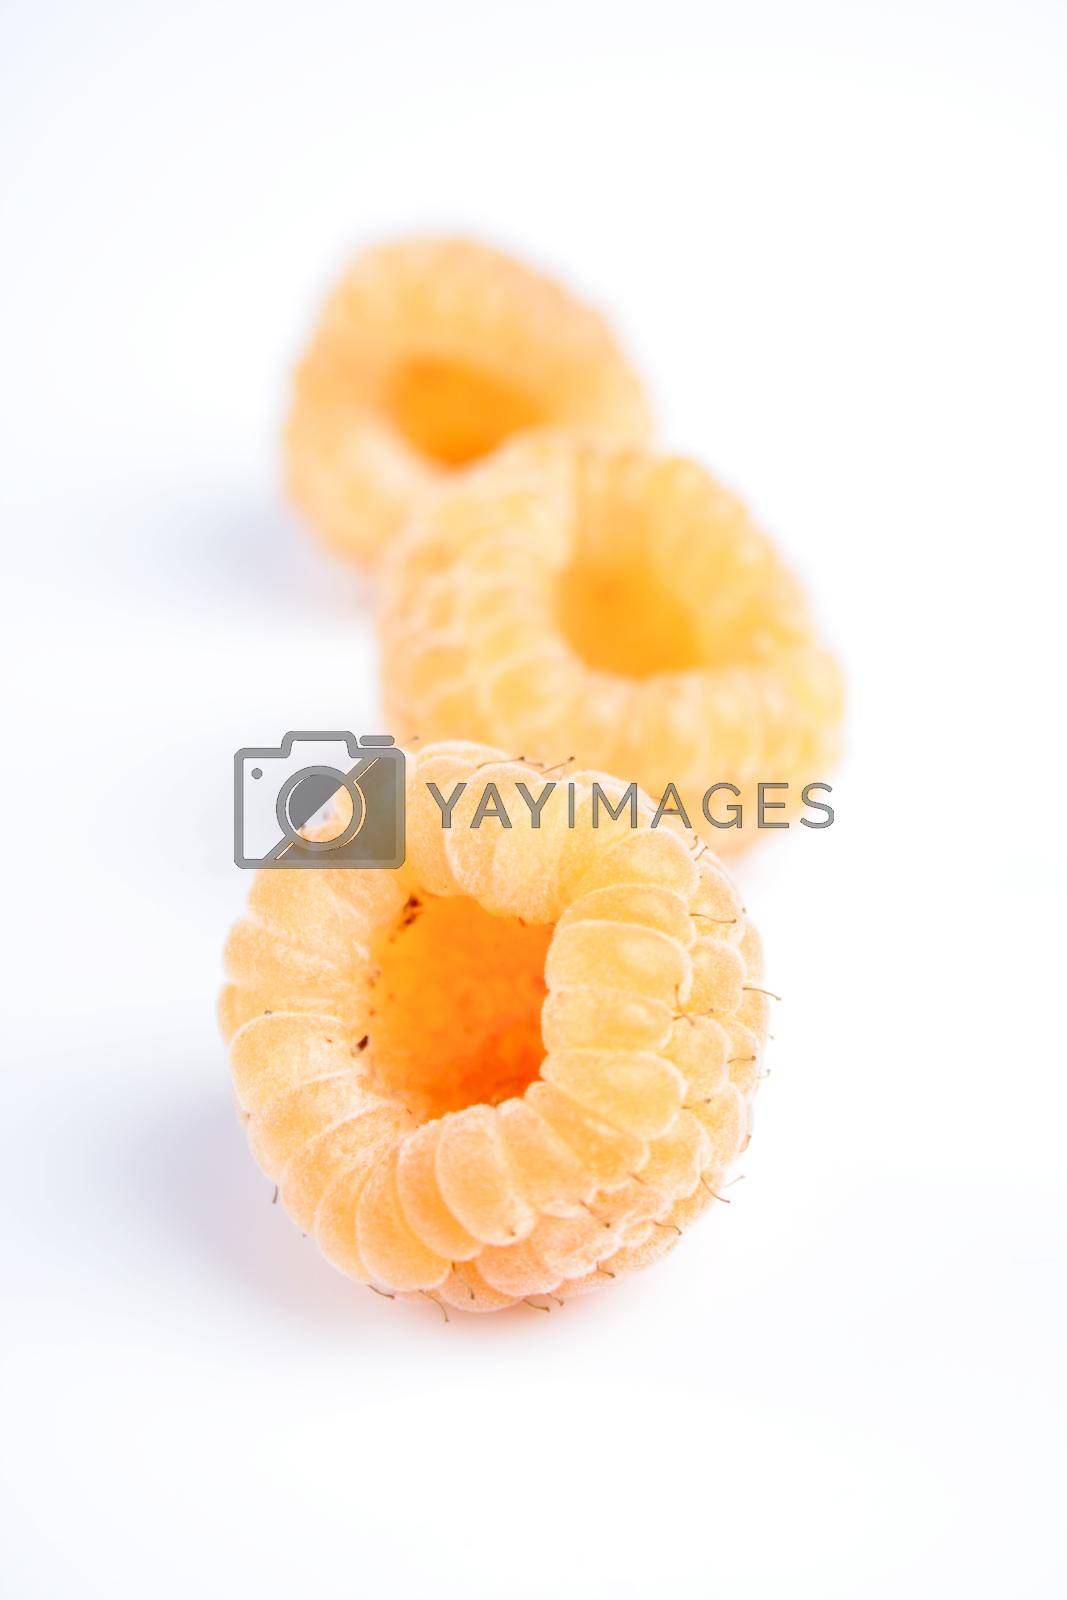 Royalty free image of Orange raspberries by moodboard